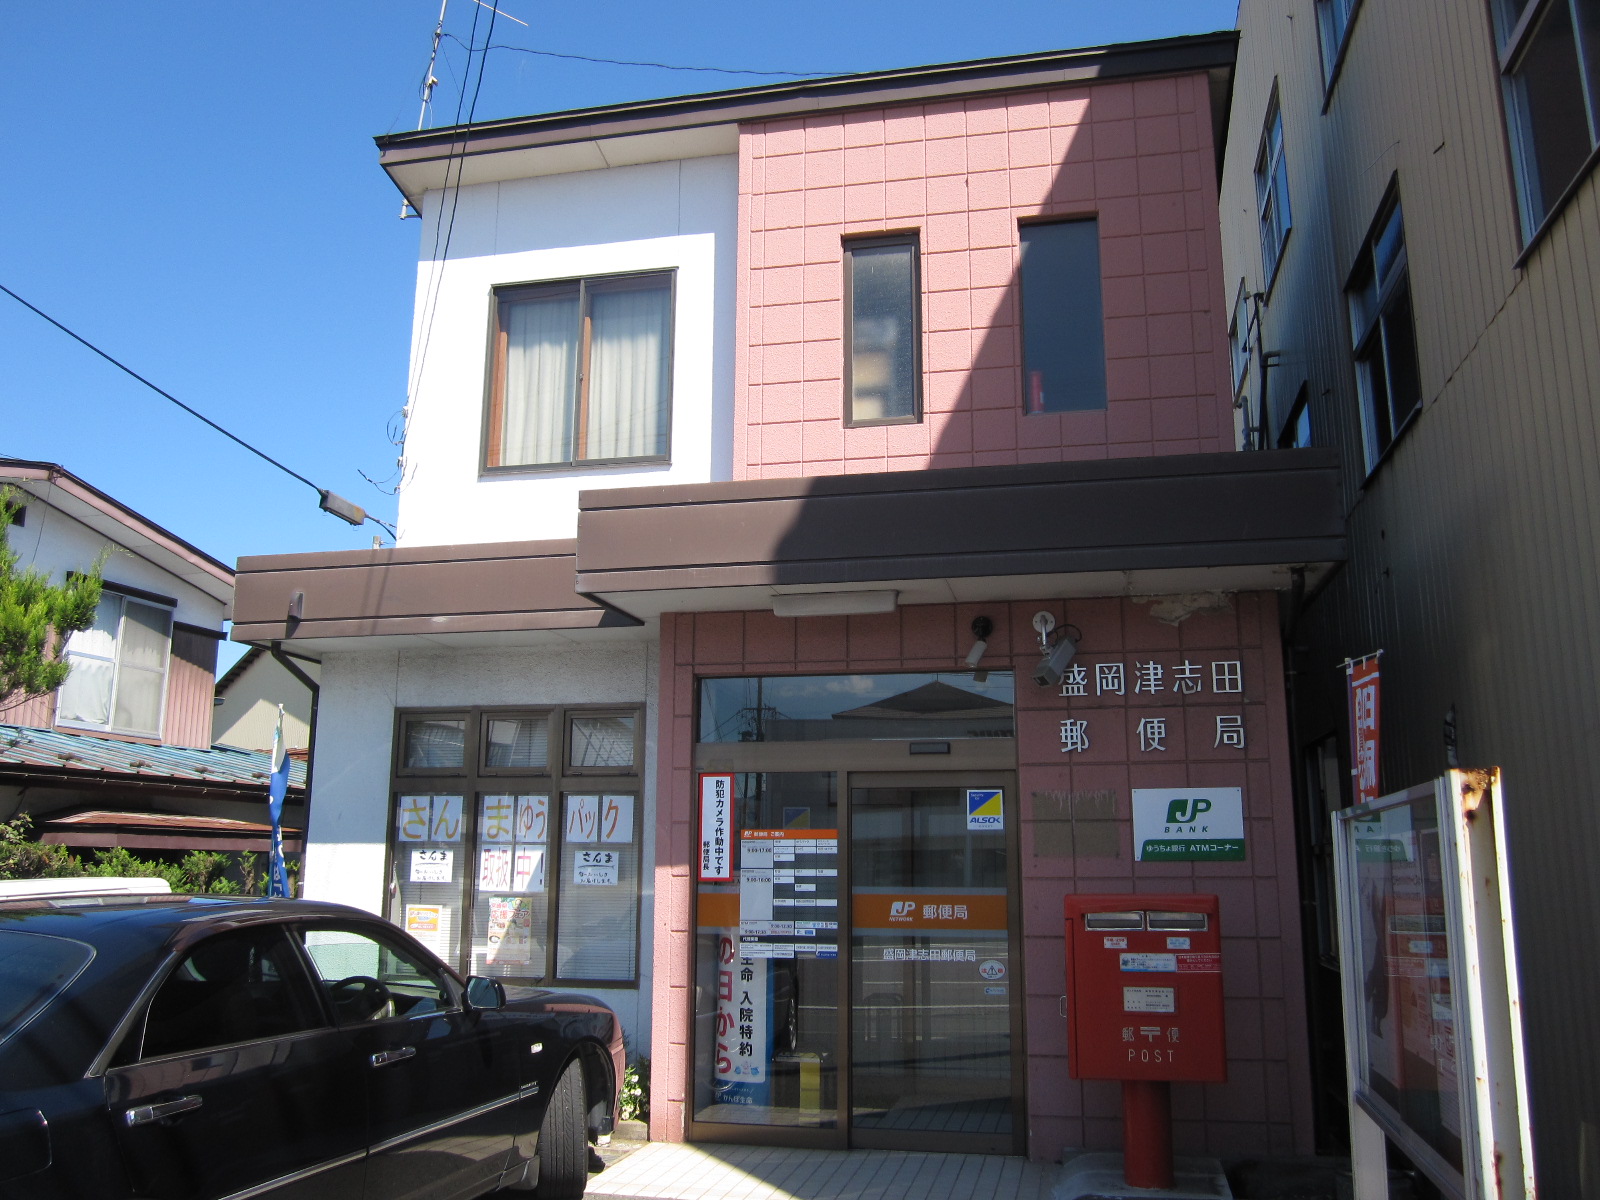 post office. 961m to Morioka Tsushida post office (post office)